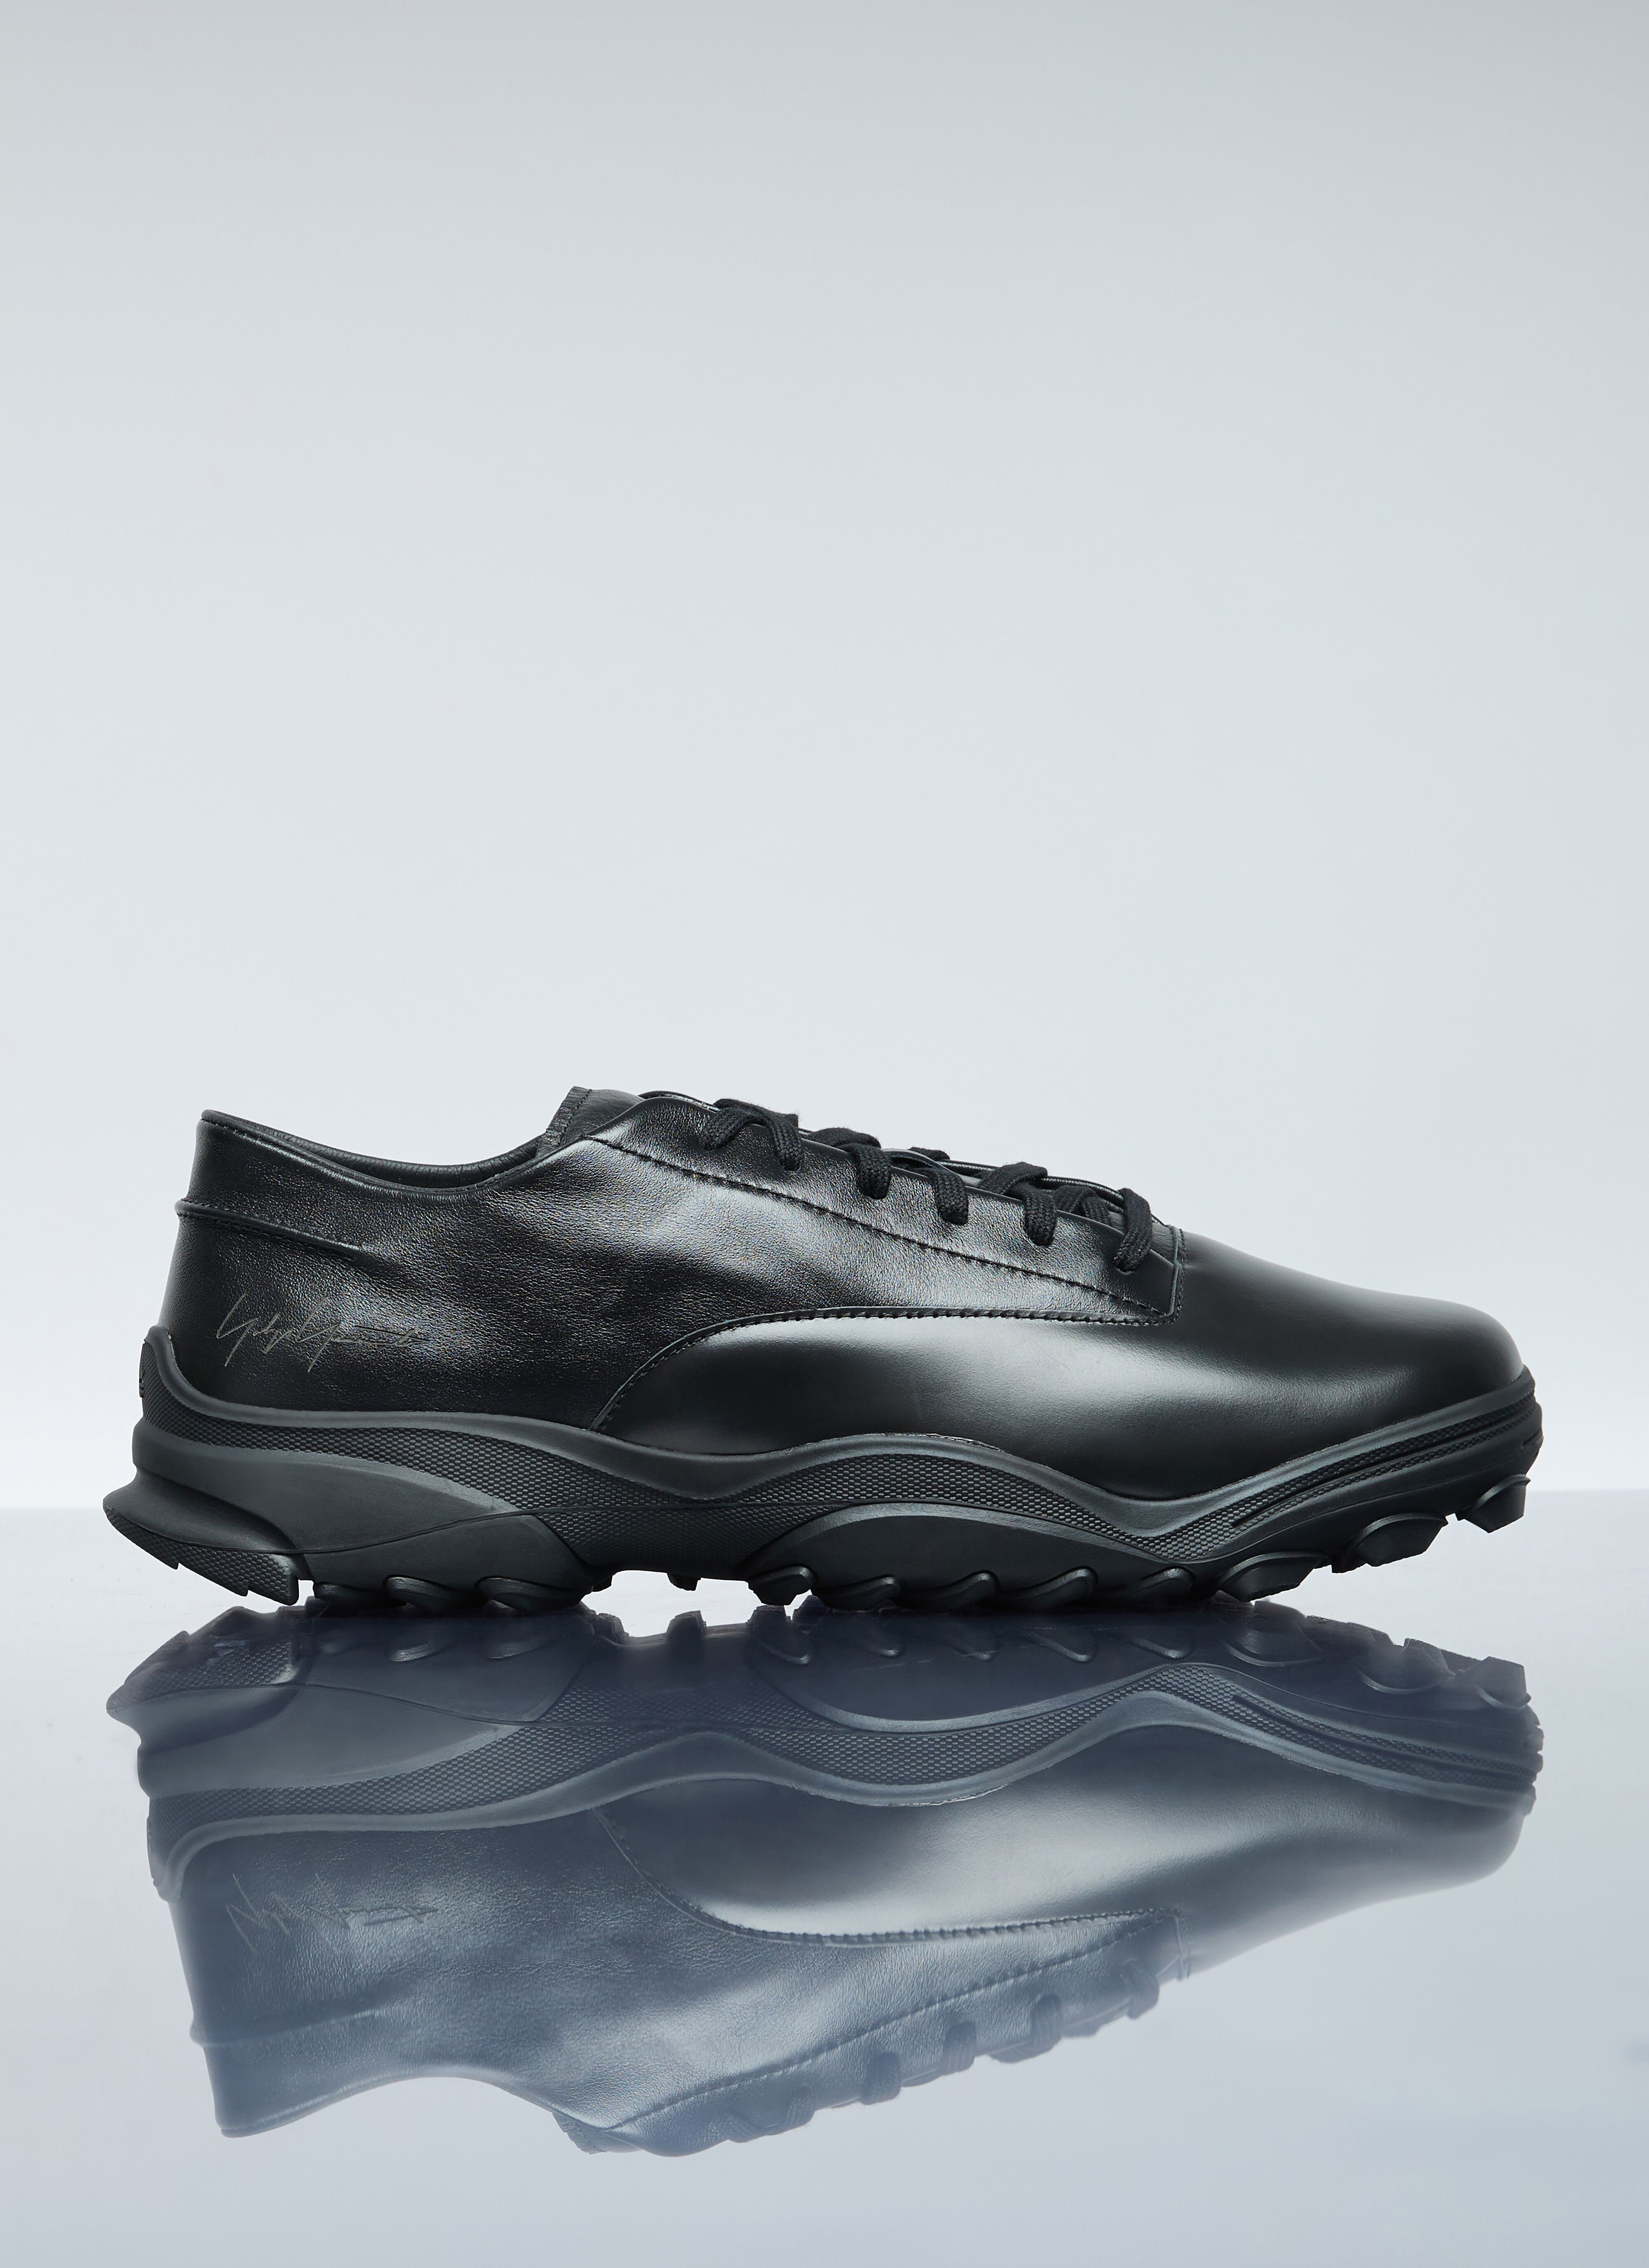 adidas Y-3 GSG9 Leather Sneaker Blue adi0356002